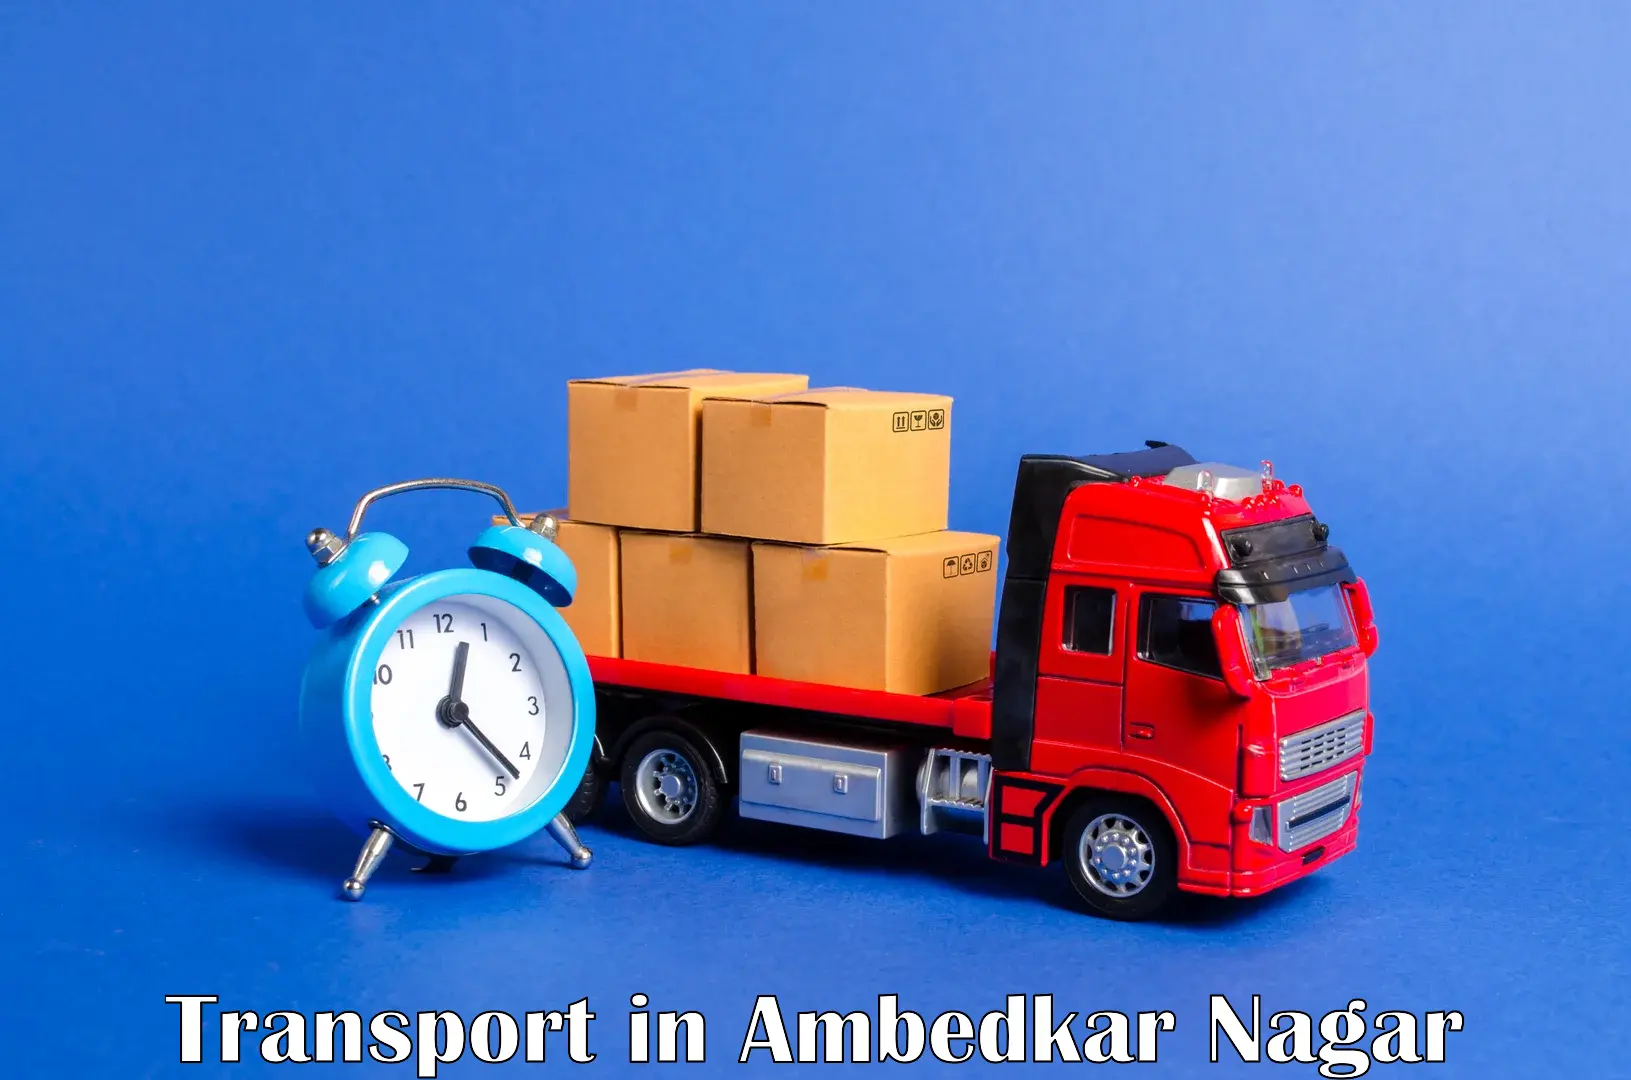 Transport services in Ambedkar Nagar